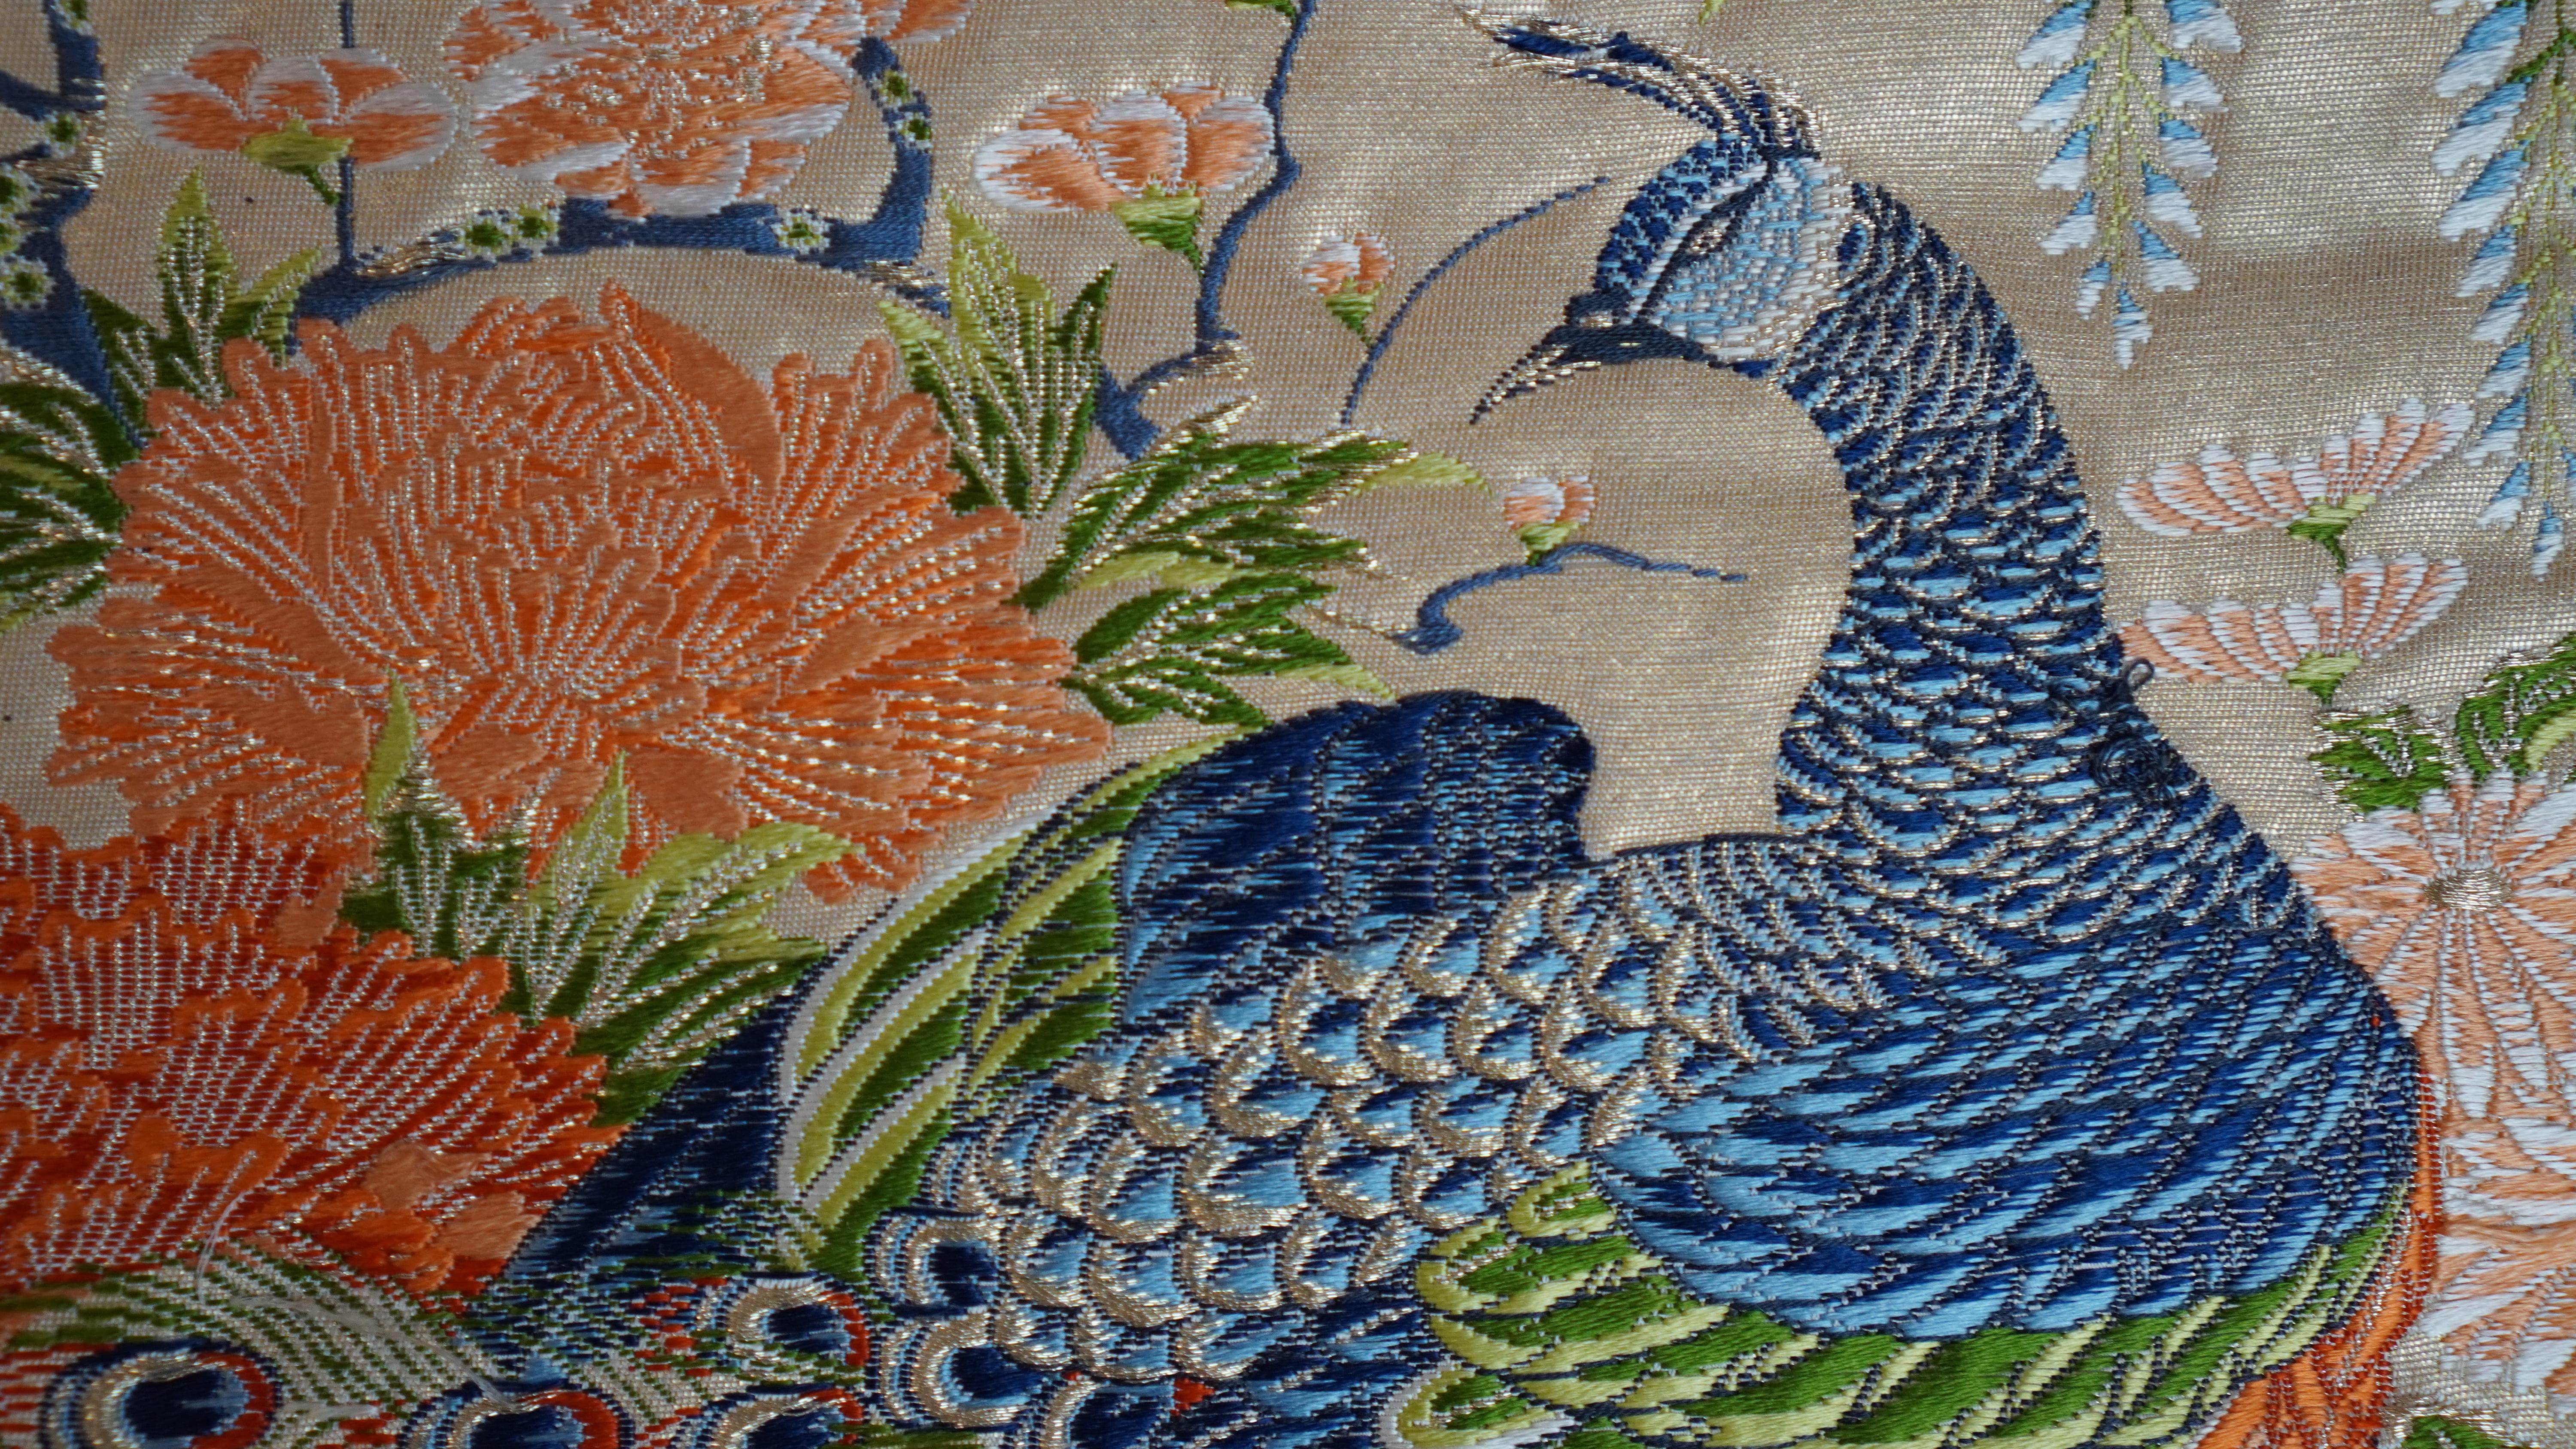 Dieser japanische Kimono-Wandteppich ist der einzige seiner Art auf der Welt. Es wurde von japanischen Handwerkern sorgfältig und akribisch bestickt.

Wir sind stolz darauf, diesen Kimono-Wandteppich präsentieren zu können, der mit Pfauen und Blumen